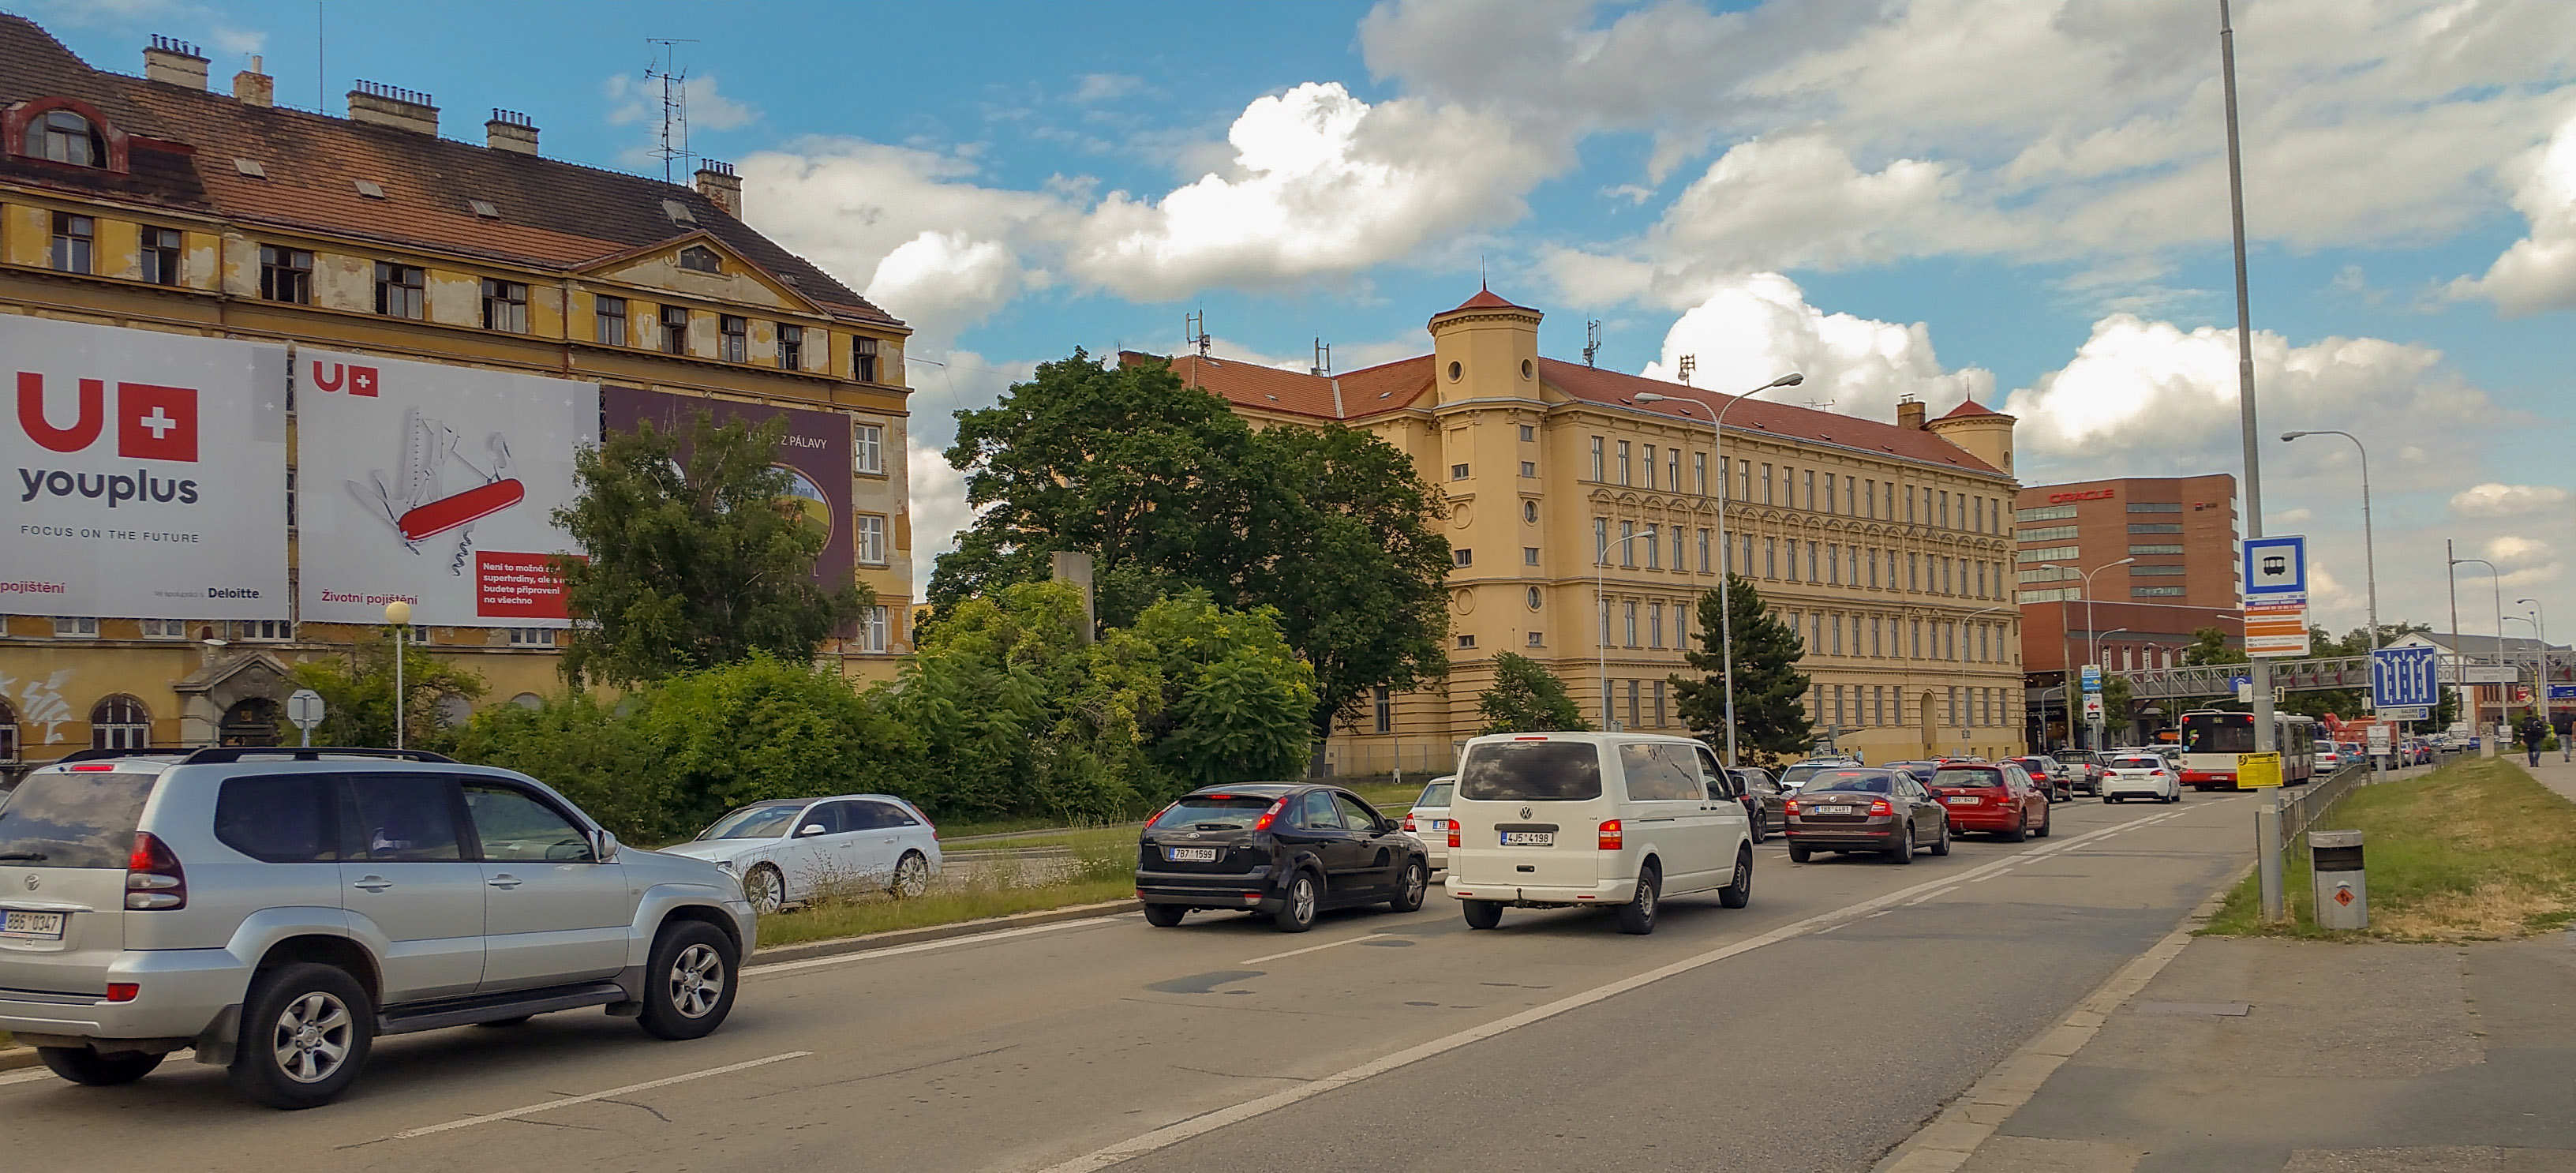 Ulice Opuštěná v Brně, kde mělo vzniknout nové brněnské nádraží